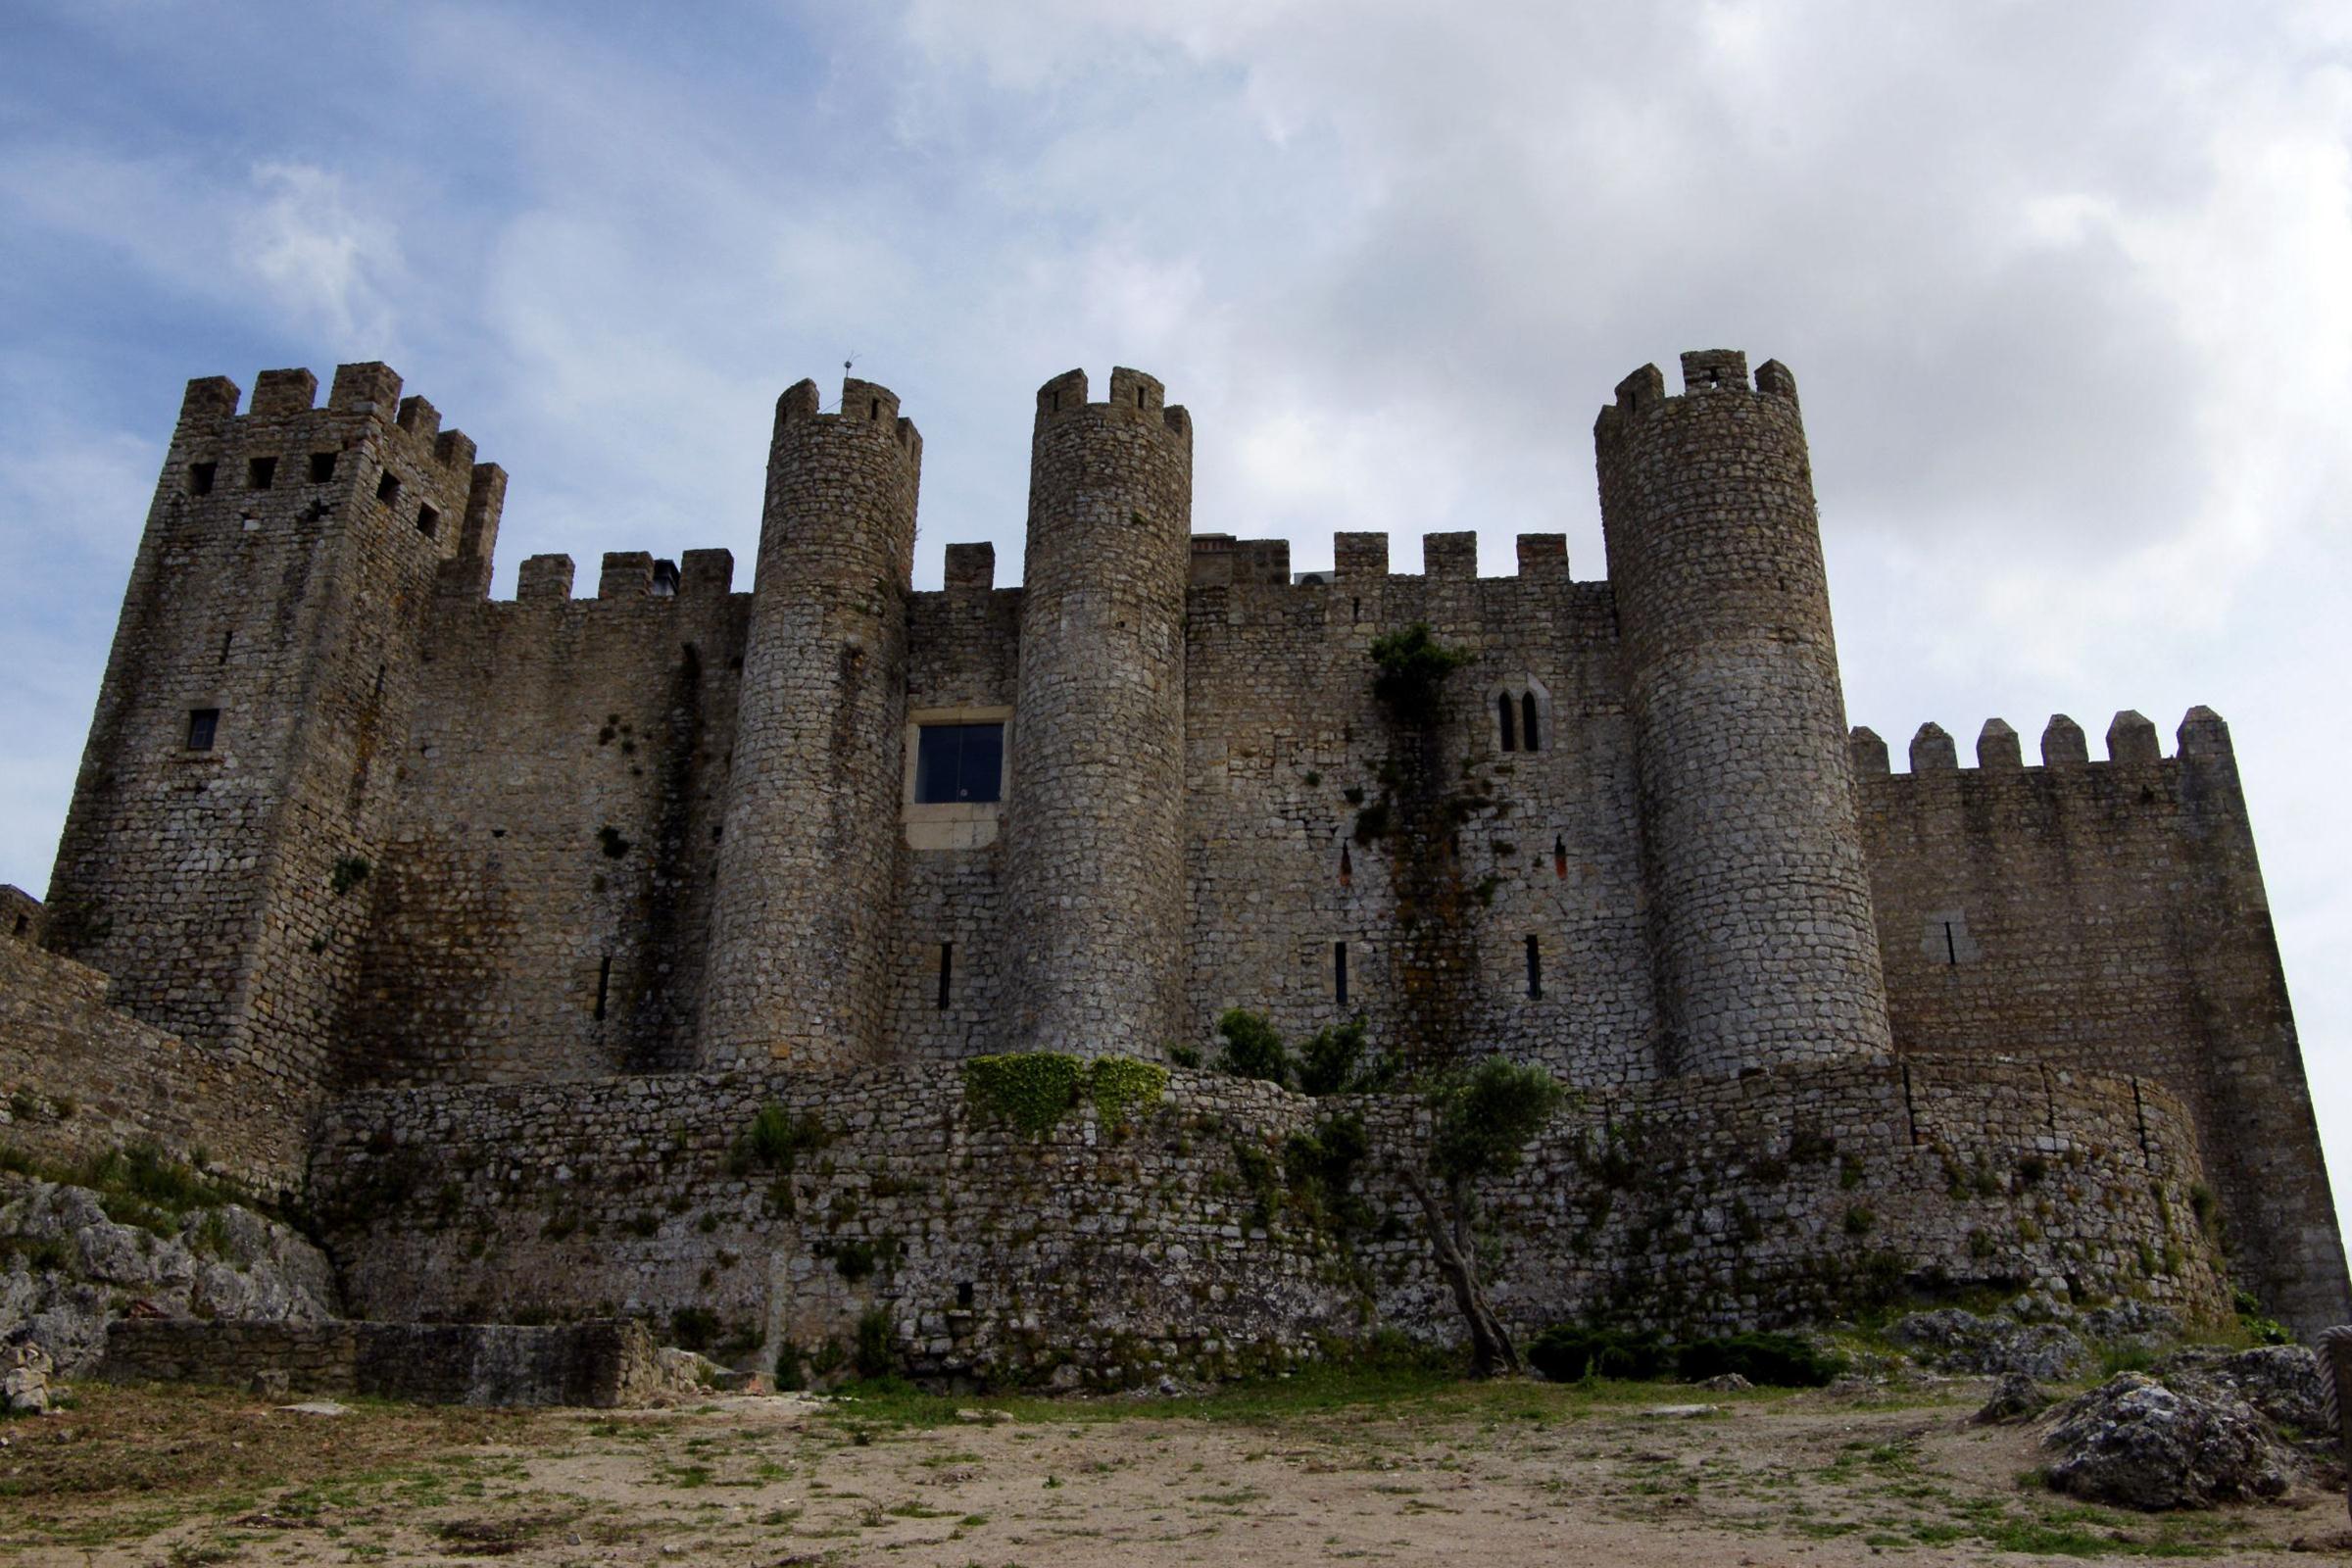 Pousada Castelo Óbidos